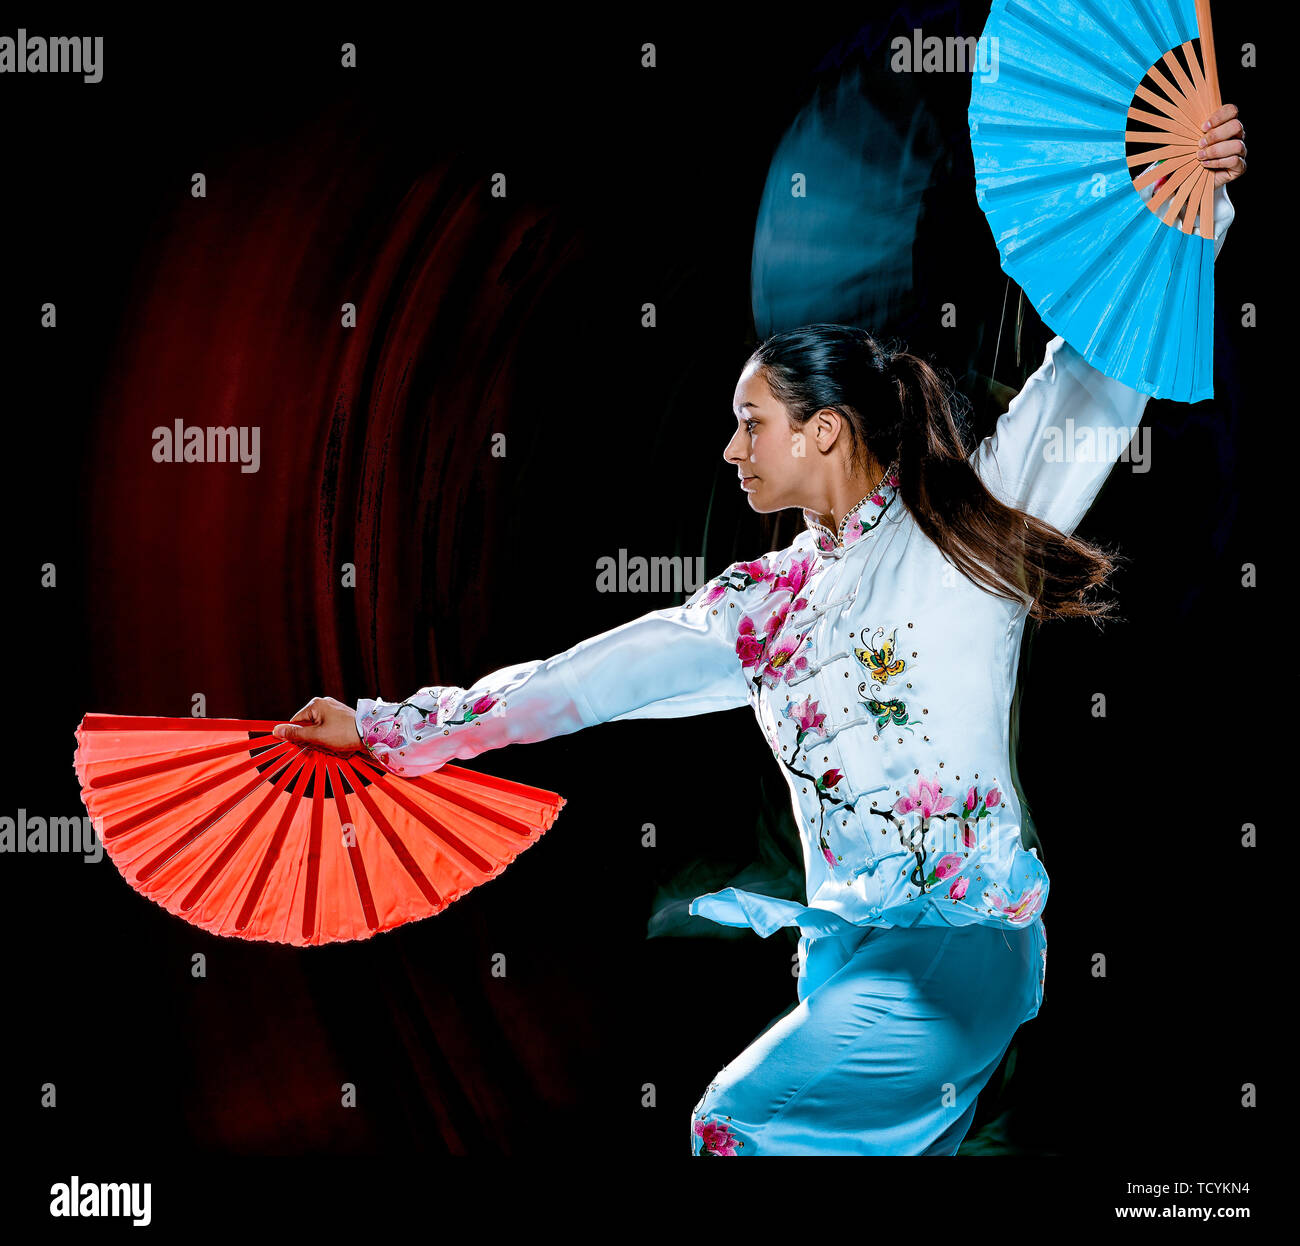 Eine chinesische Frau partacticing Tai Chi Chuan Tadjiquan Körperhaltung studio Schuß auf schwarzen Hintergrund mit Licht malen Effekt isoliert Stockfoto